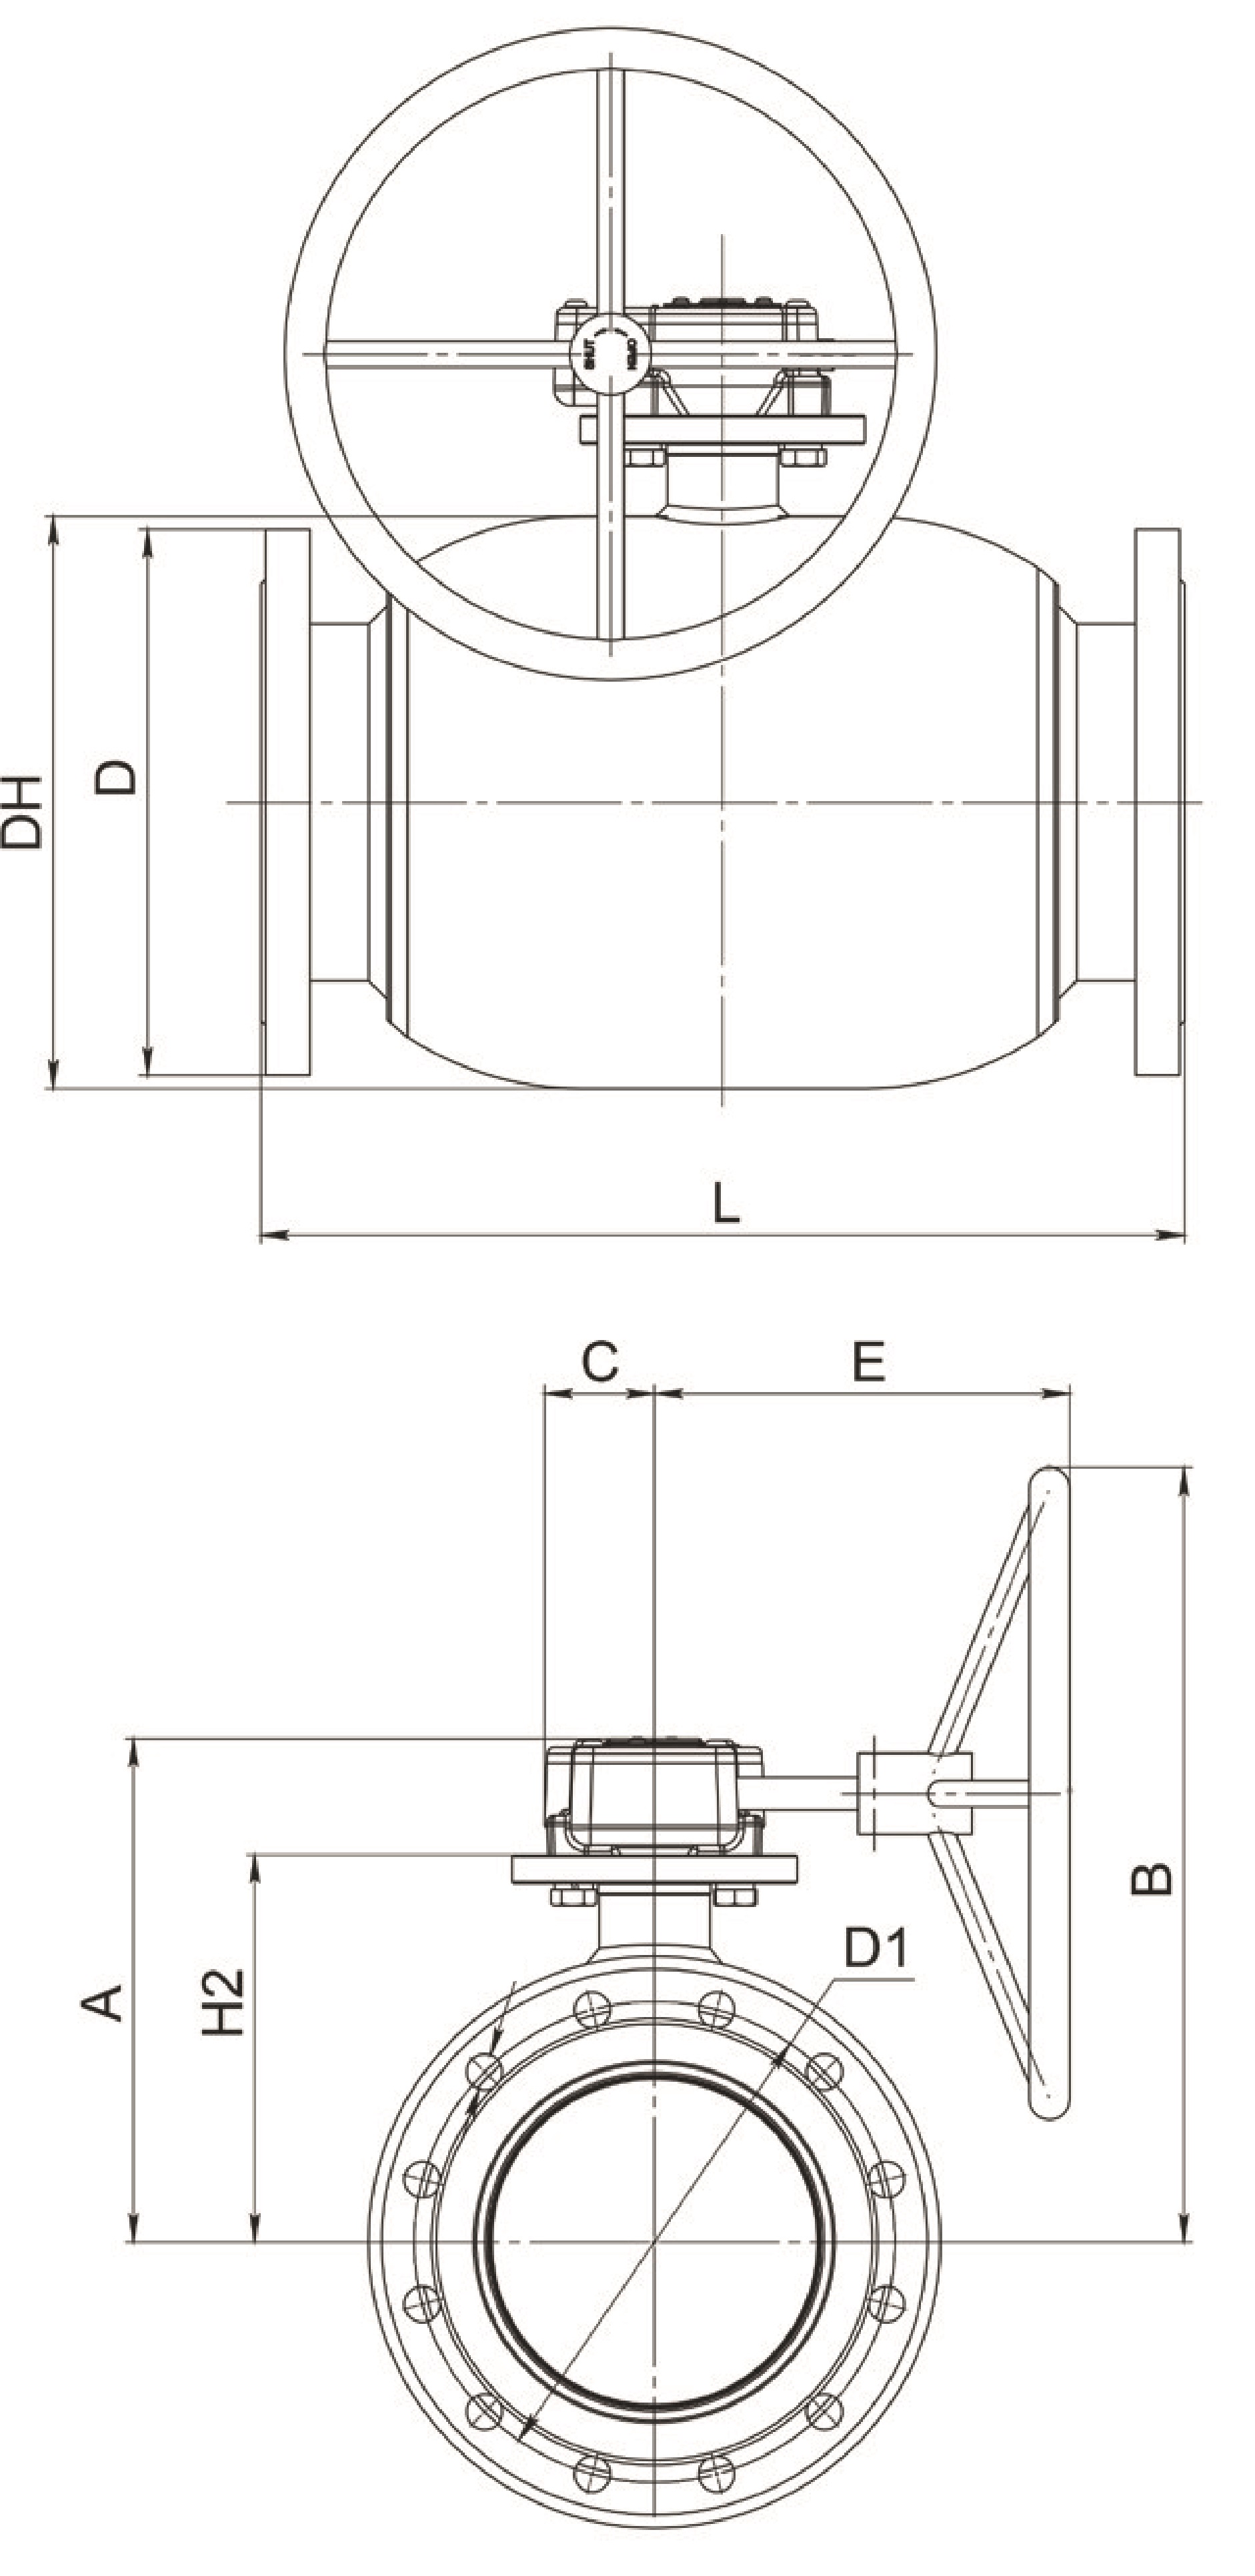 Кран шаровый Broen Ballomax-КШТ61.113.Р.25 Ду200 Ру25 полнопроходный с плавающим шаром, с ISO фланцем, корпус - сталь, уплотнение - EPDM, фланцевый, с редуктором